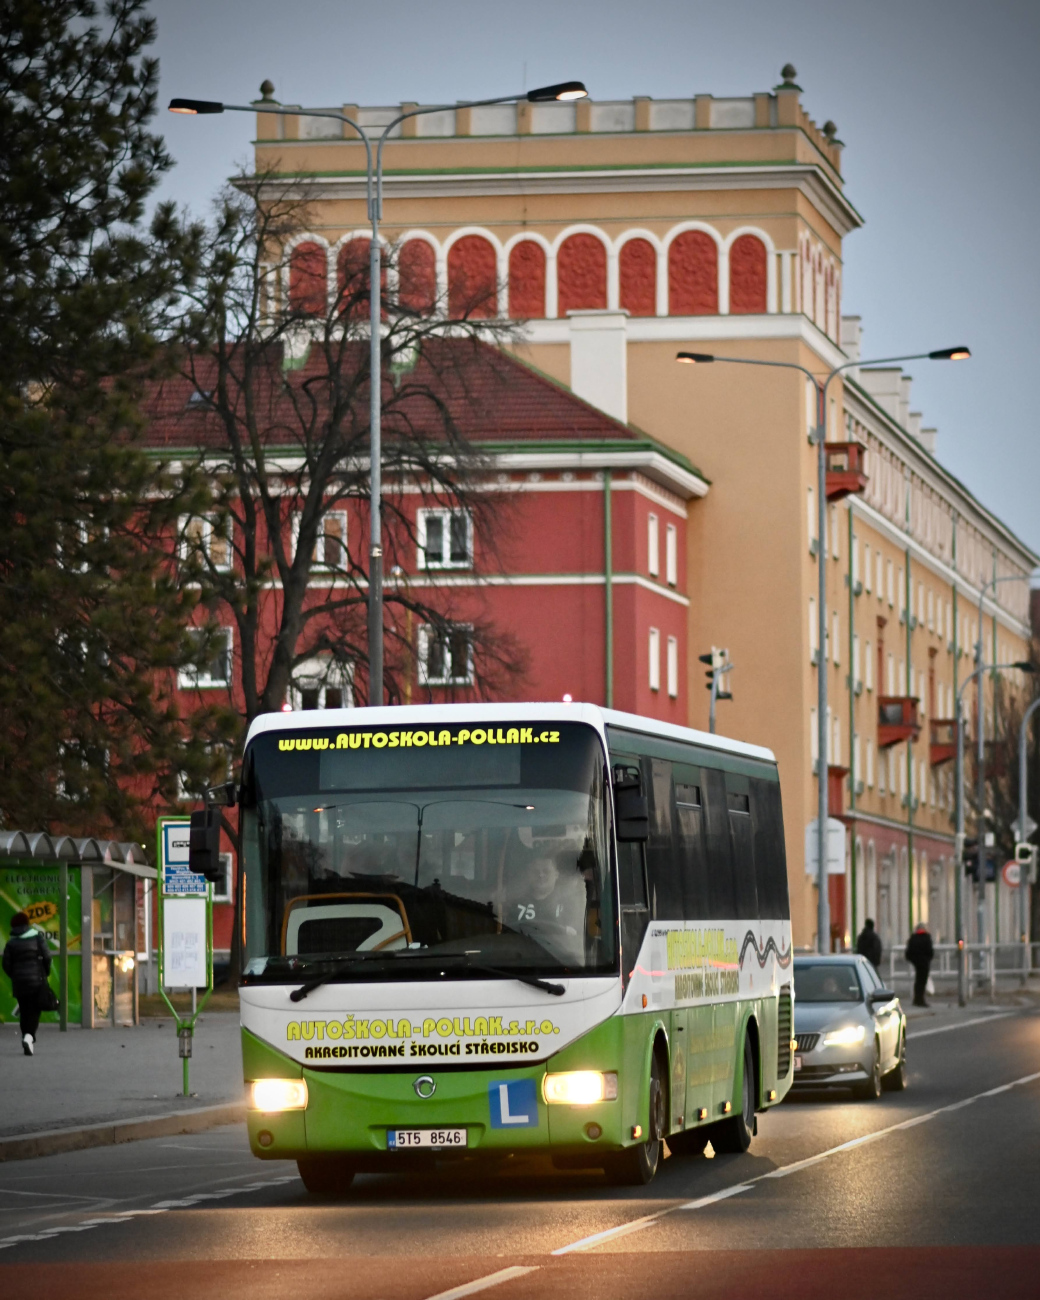 Karviná, Irisbus Crossway 10.6M nr. 5T5 8546